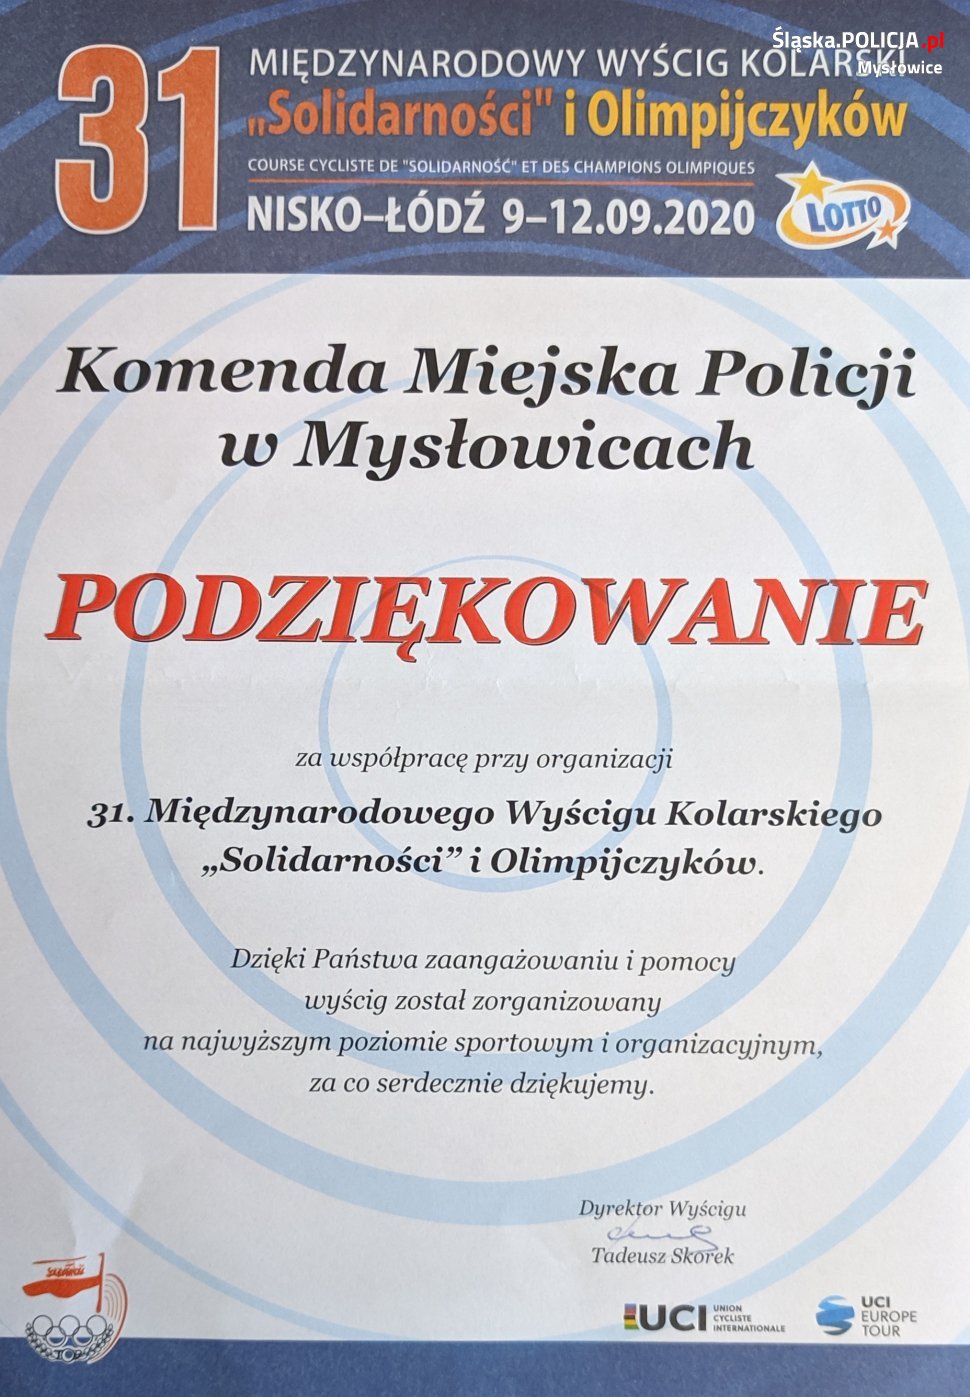 podziękowania dla Komendy Miejskiej Policji w Mysłowicach za współpracę przy organizacji 31. Międzynarodowego Wyścigu Kolarskiego "Solidarności" i Olimpijczyków.